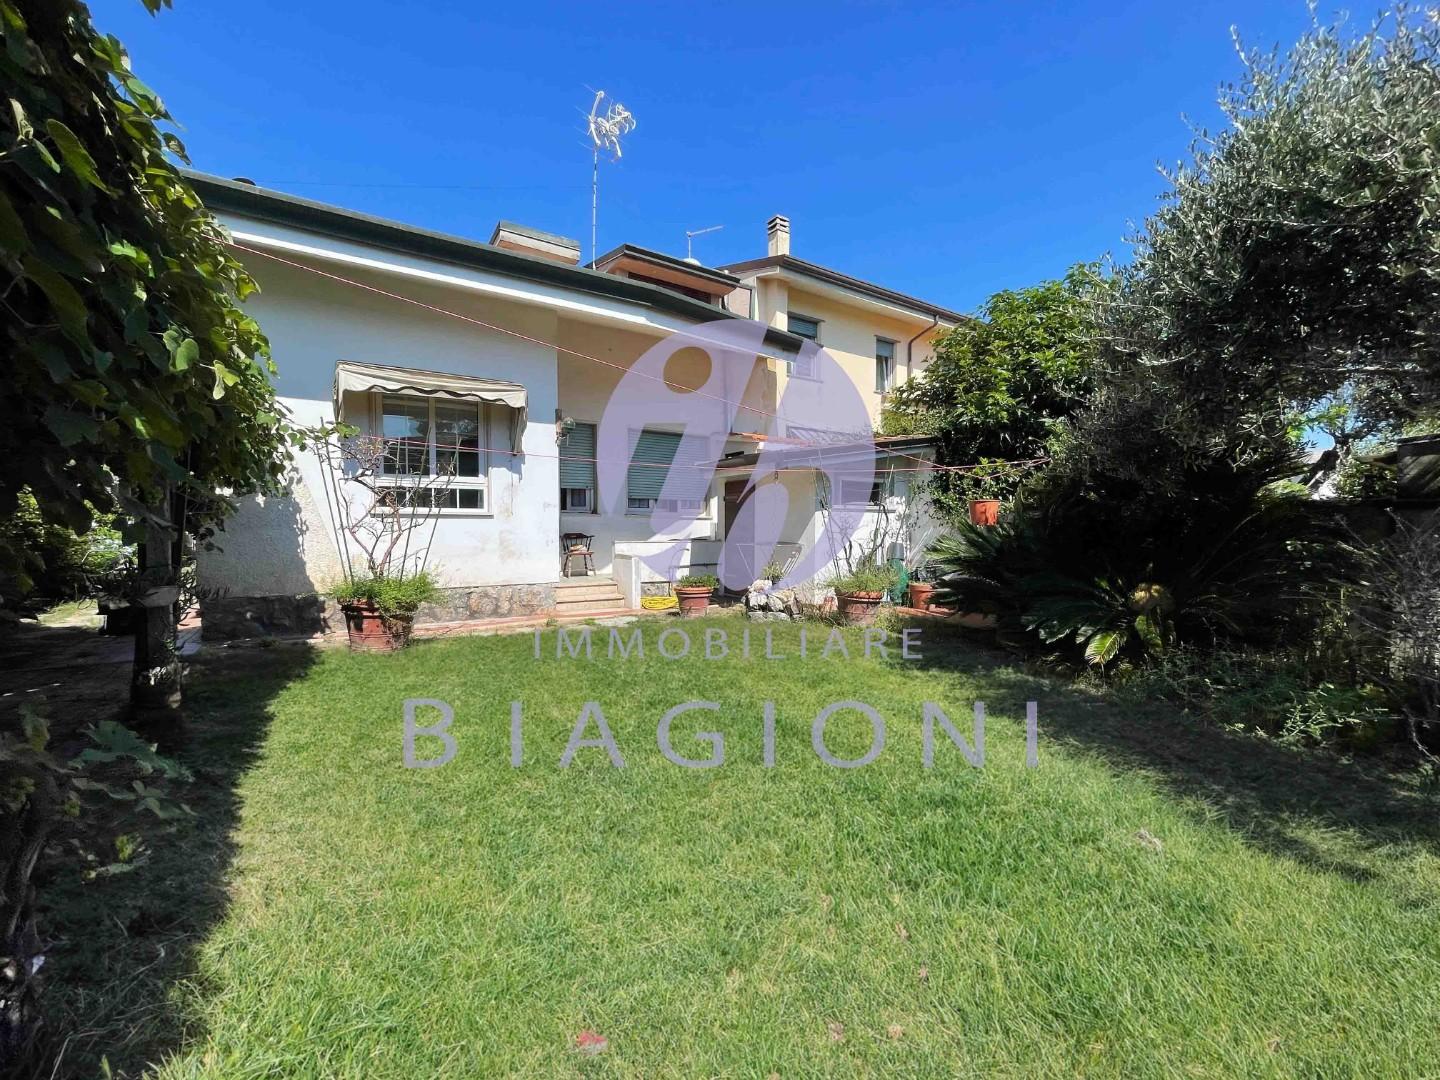 Villa Bifamiliare in vendita a Camaiore, 8 locali, prezzo € 420.000 | PortaleAgenzieImmobiliari.it